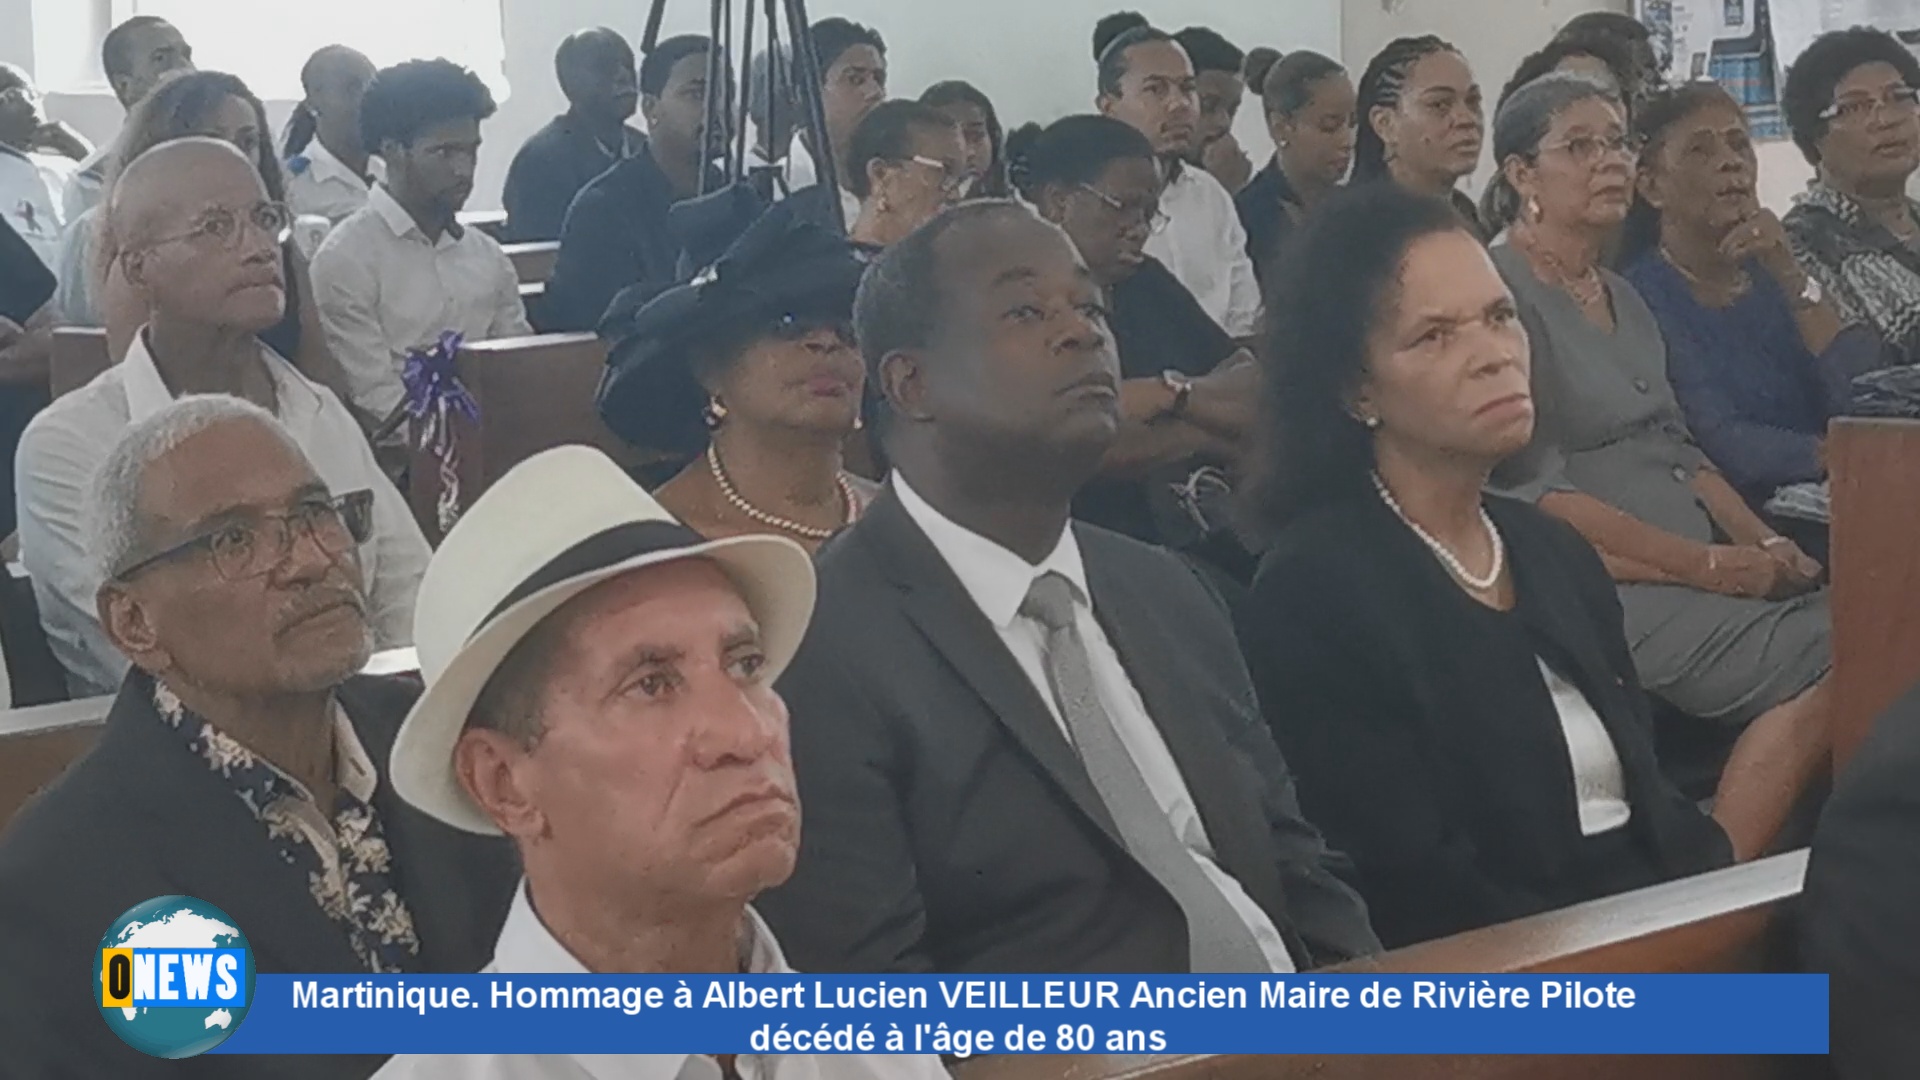 [Vidéo] Martinique. Hommage à Albert Lucien VEILLEUR Ancien Maire de Rivière Pilote